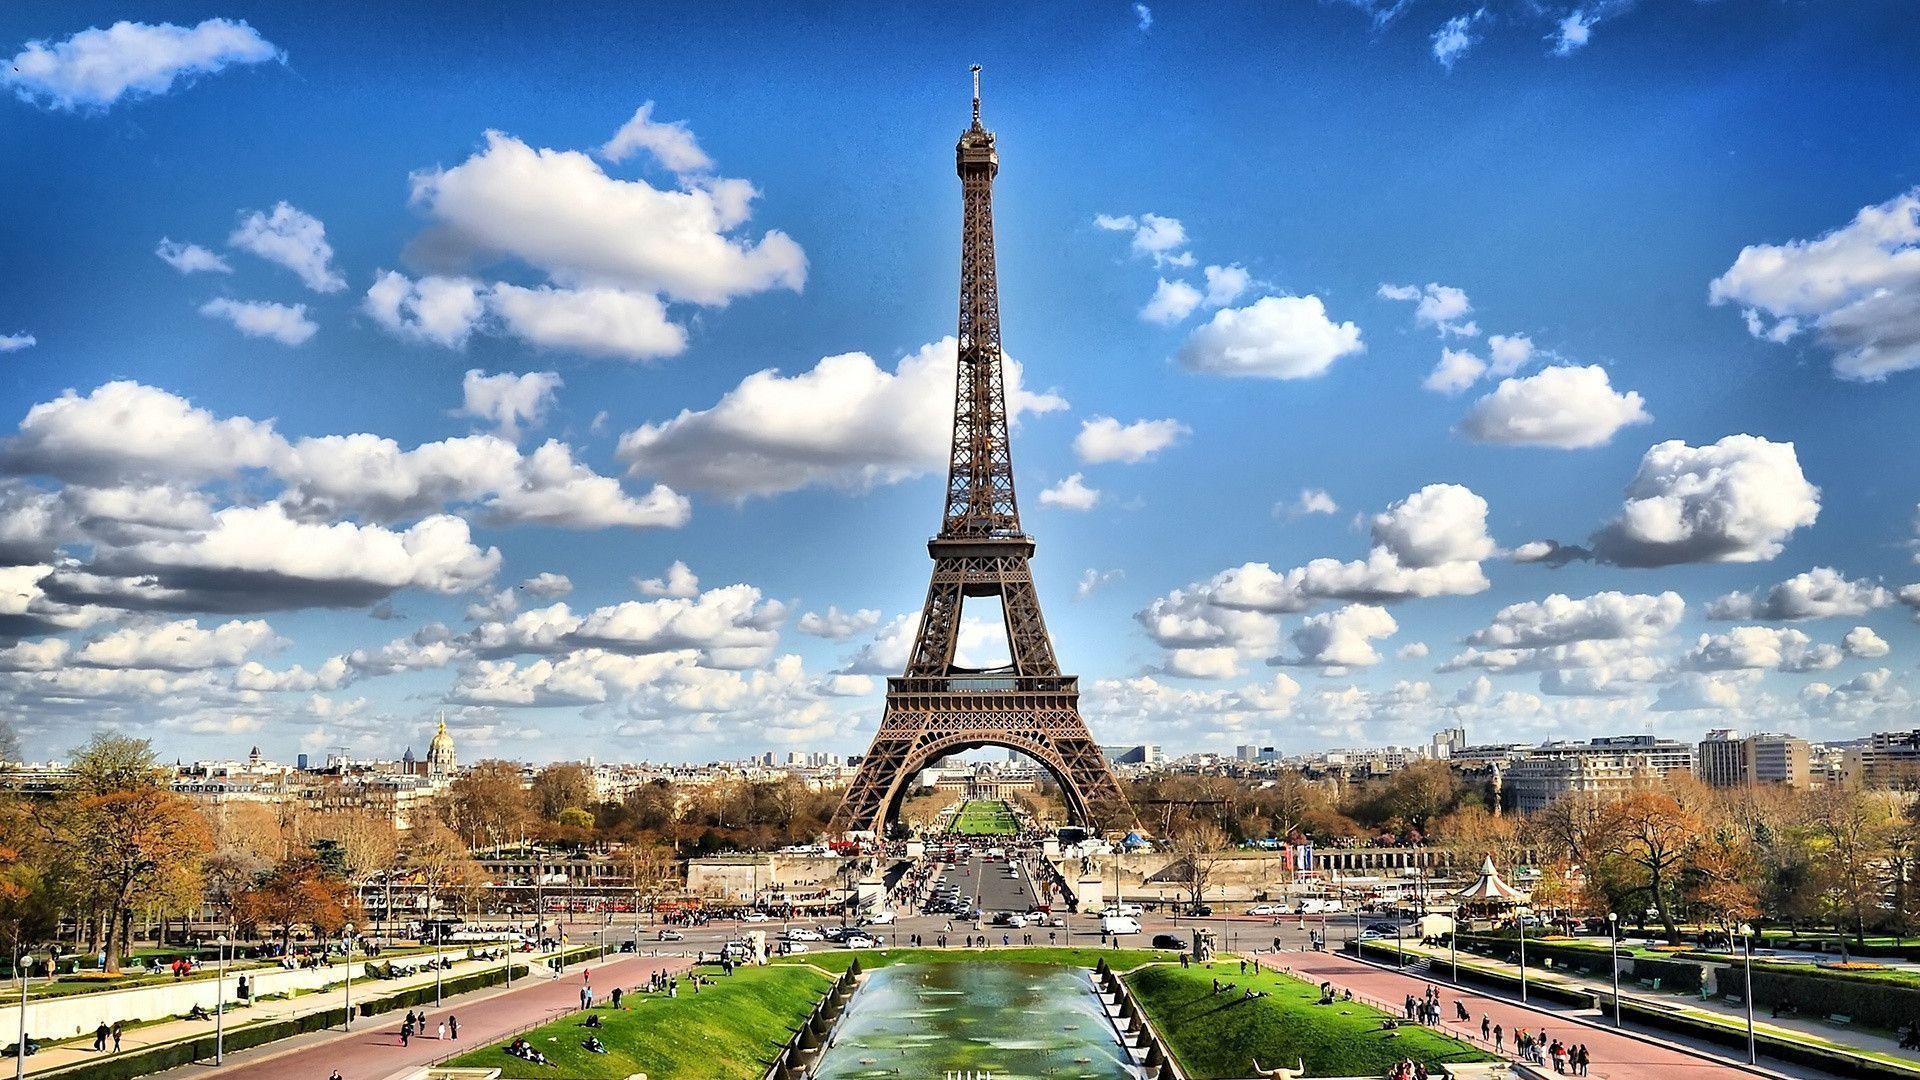 Paris hình nền  Paris hình nền 7475874  fanpop